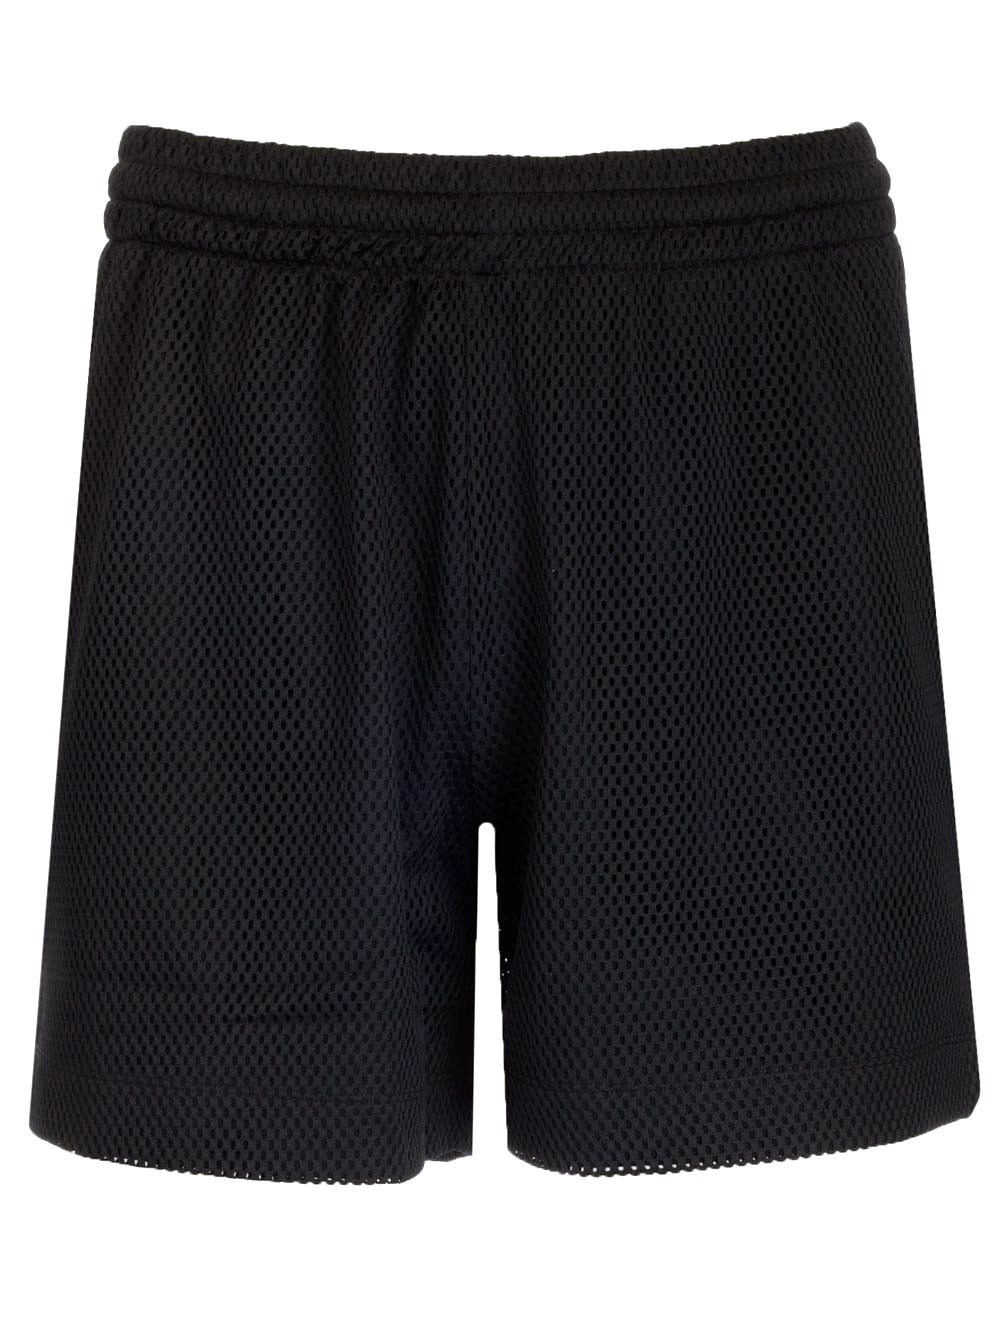 Dries Van Noten Black mesh shorts for Men - US | Al Duca d'Aosta